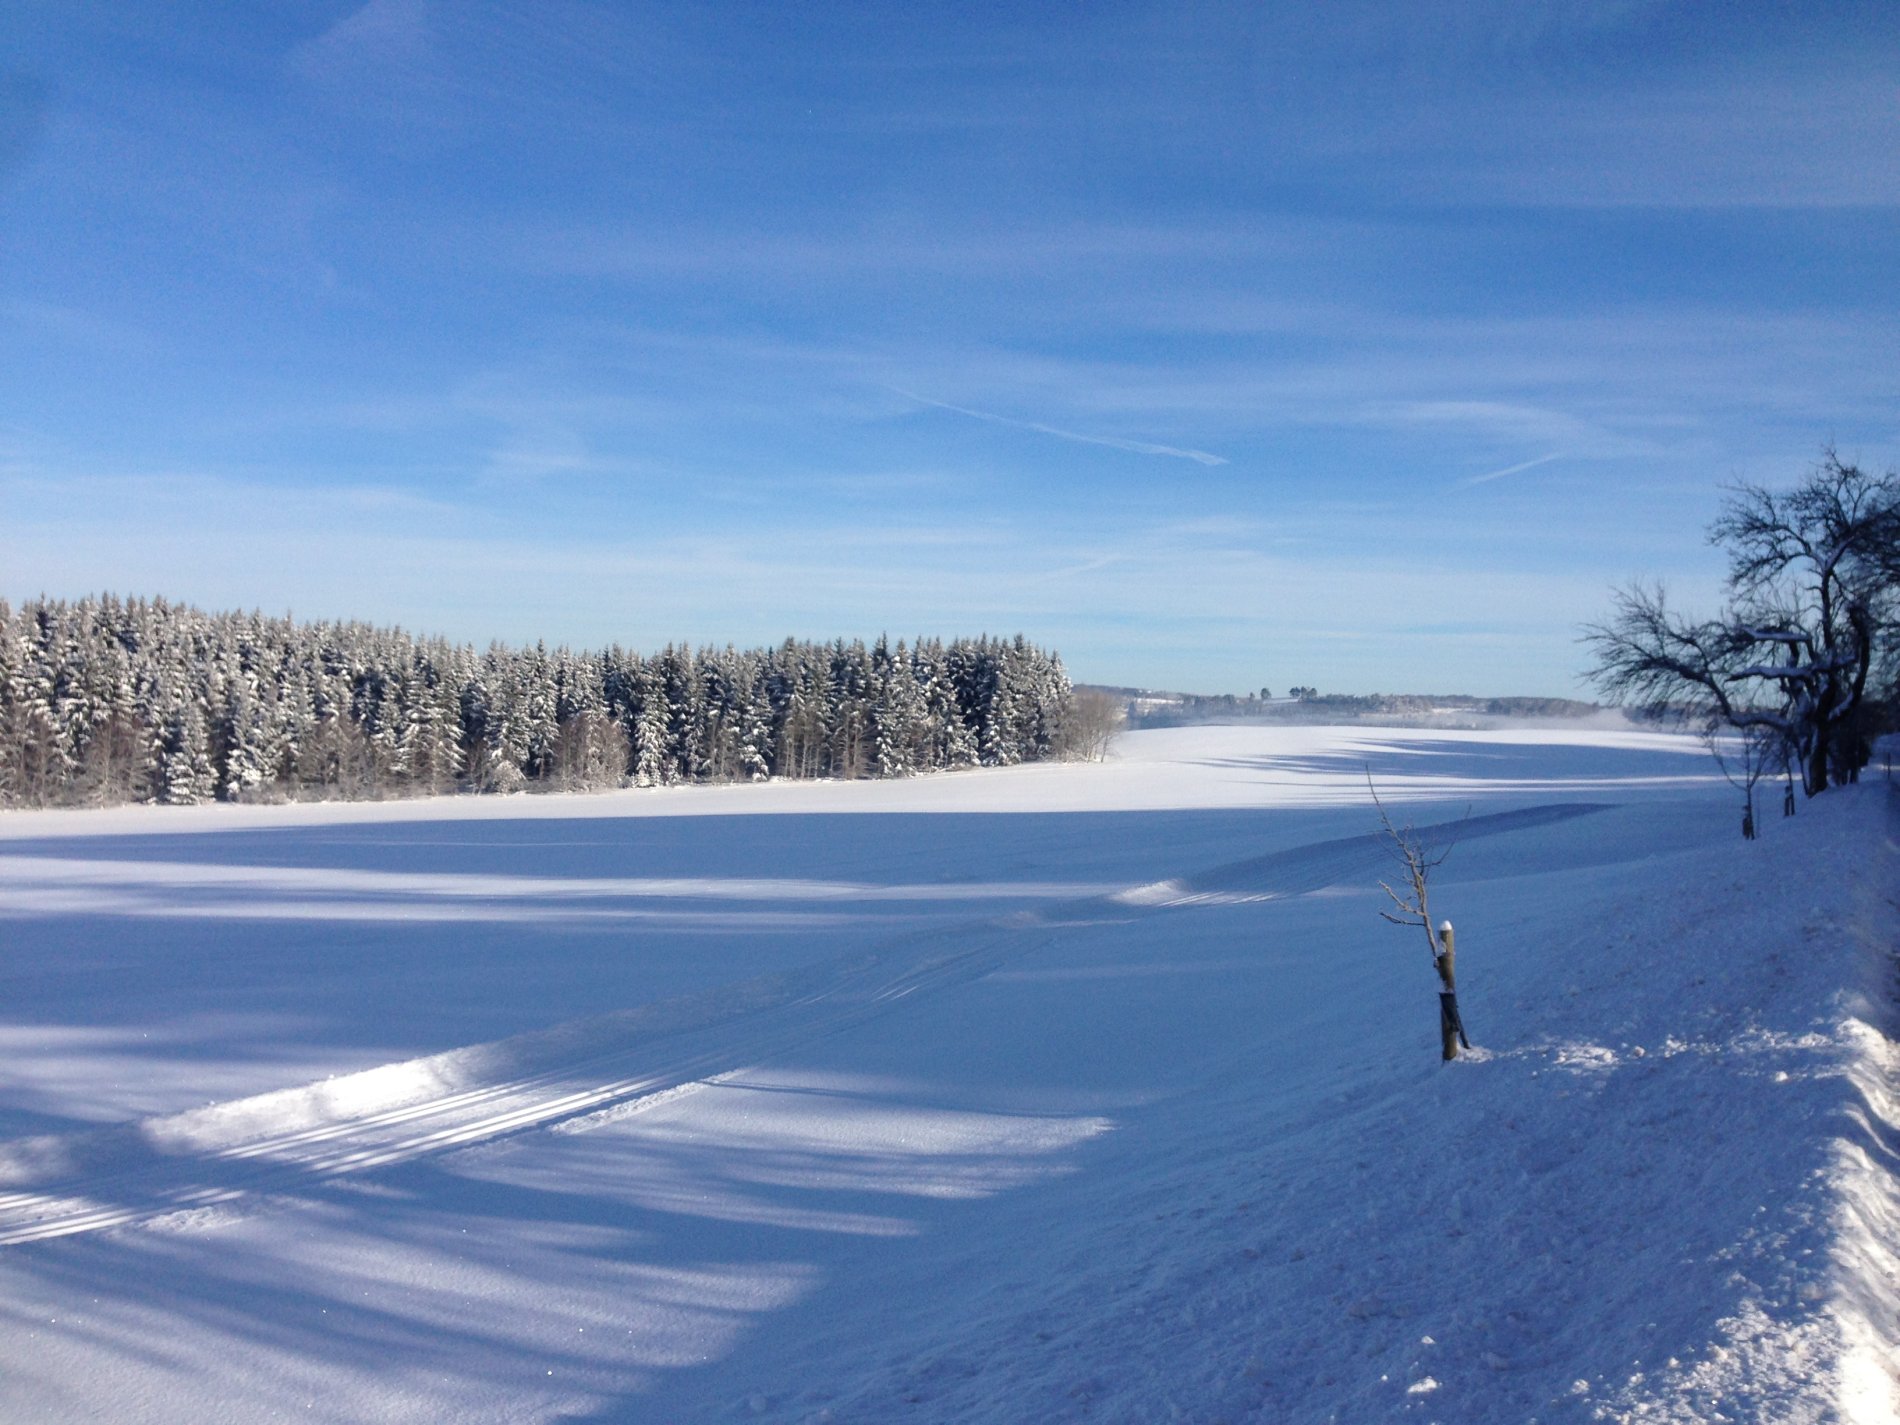 Die Loipe 3 in Heroldstatt bei Münsingen im Biosphärengebiet Schwäbische Alb. Eine zweispurige klassische Loipe verläuft durch eine schneebedeckte Landschaft. Am Horizont ist Wald. Die Sonne scheint und die Bäume werfen lange Schatten auf den Schnee.